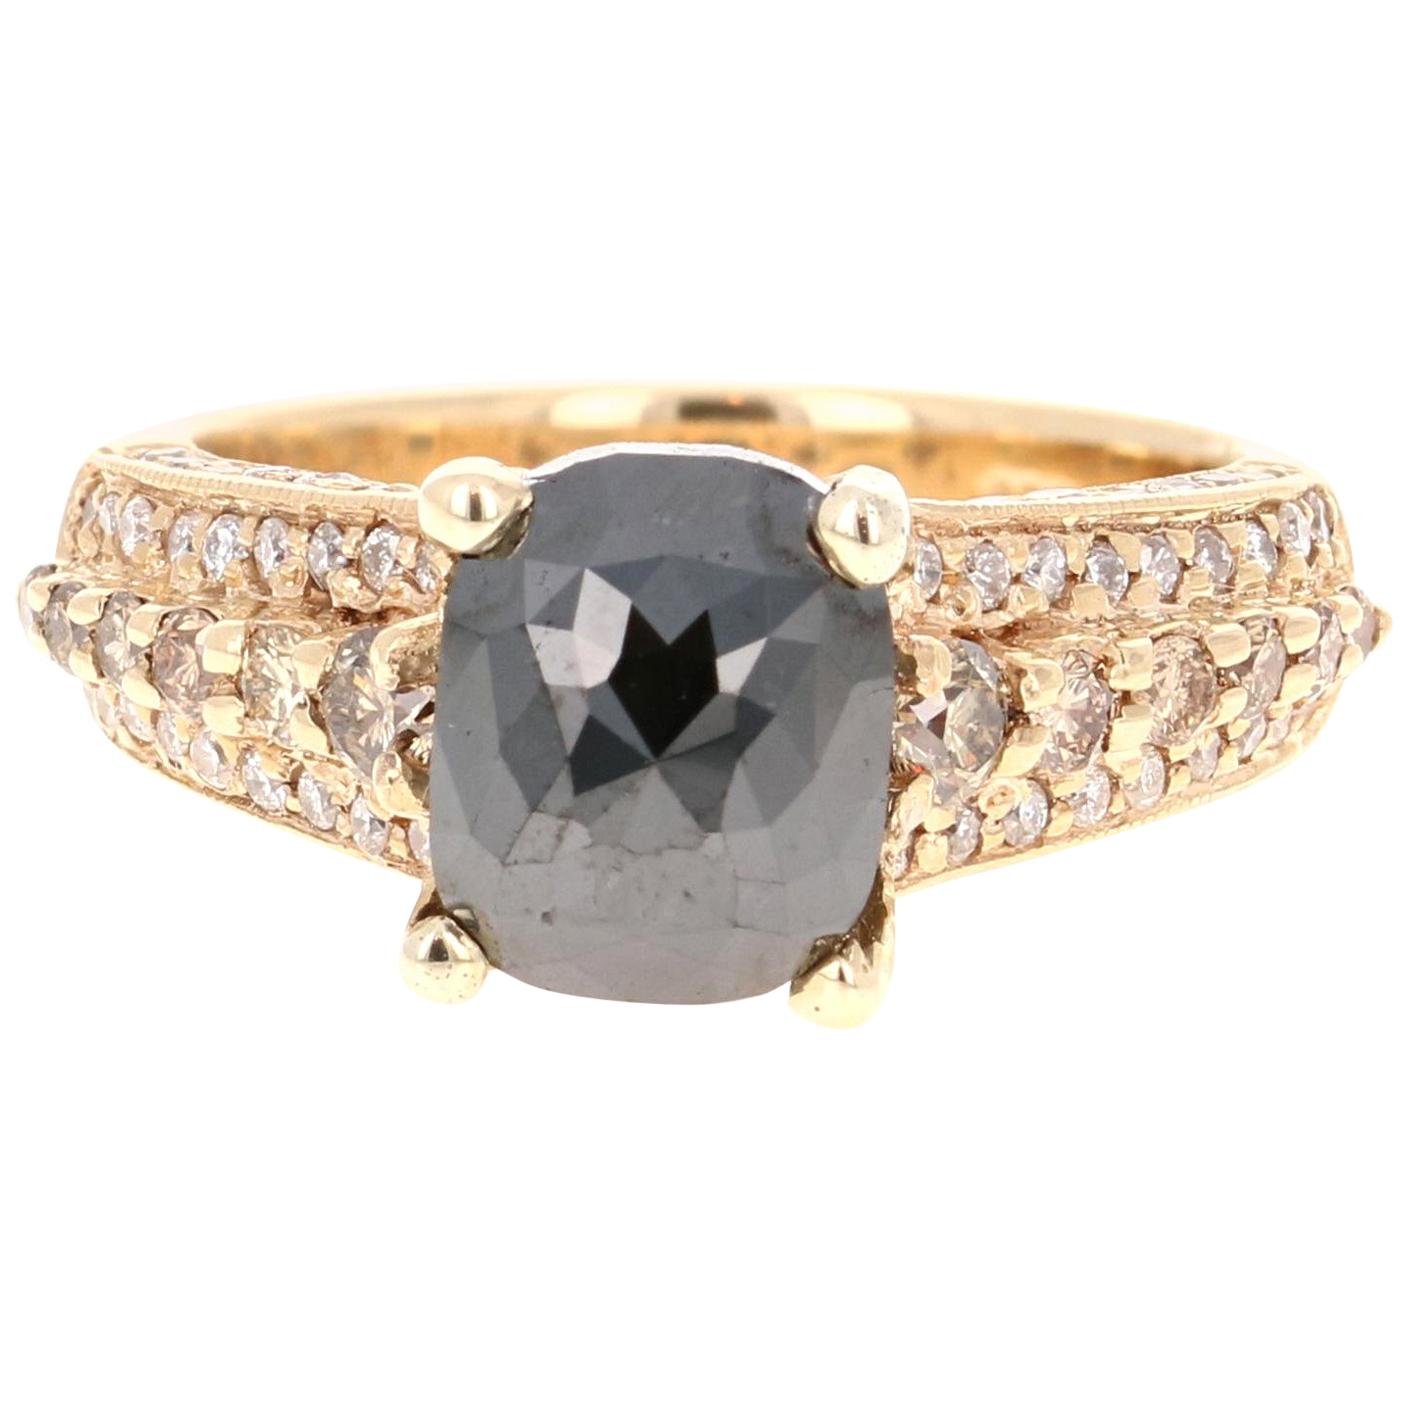 3.38 Carat Black White Diamond 14 Karat Yellow Gold Ring